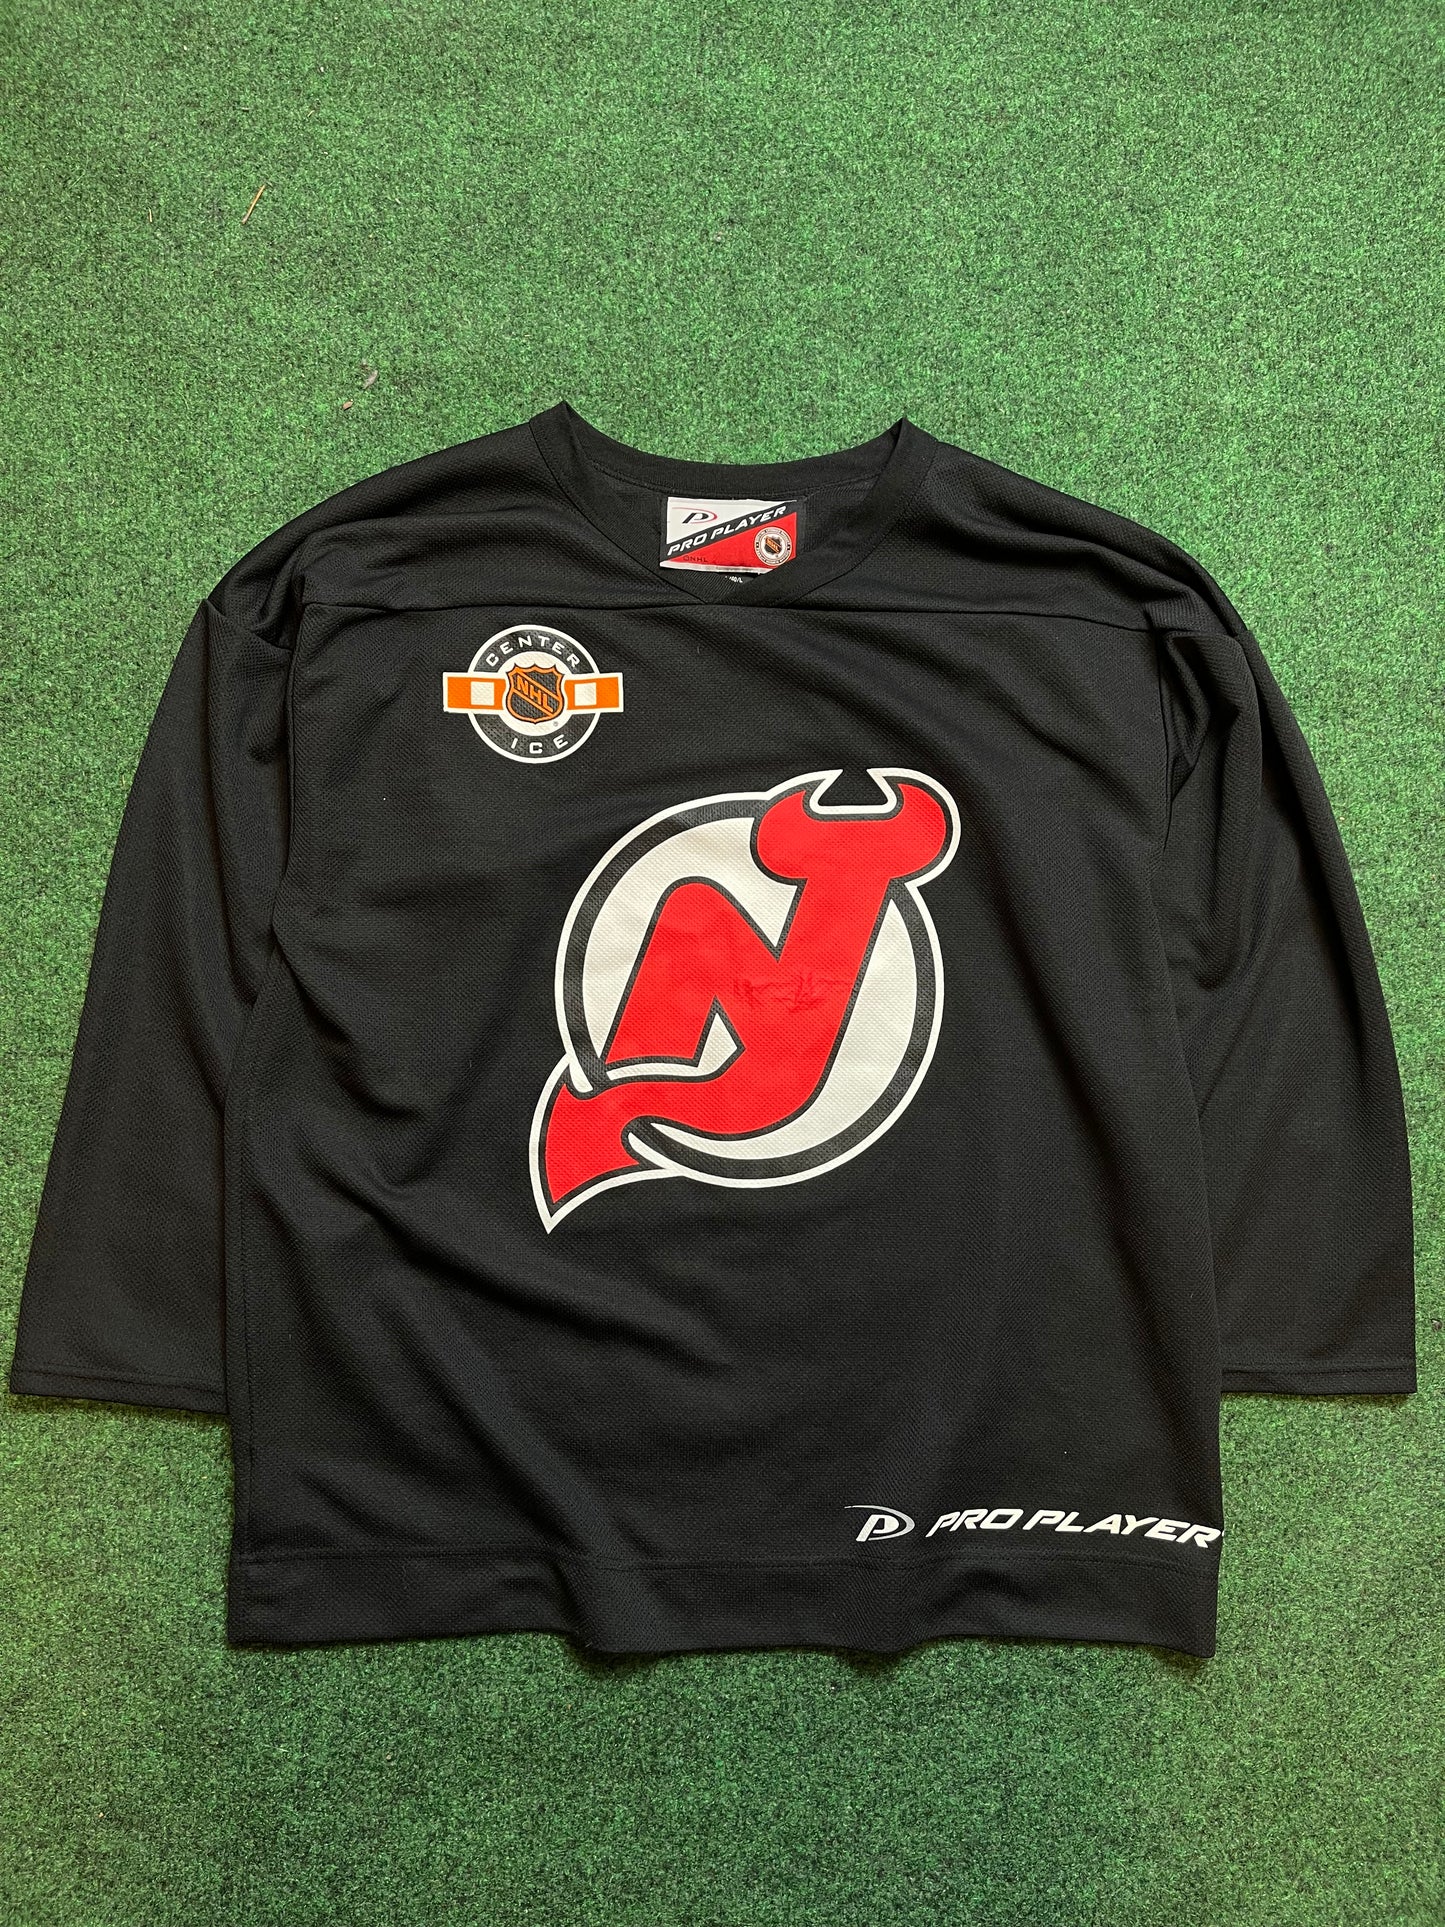 90’s New Jersey Devils Vintage Pro Player NHL Center Ice Hockey Jersey (Large)